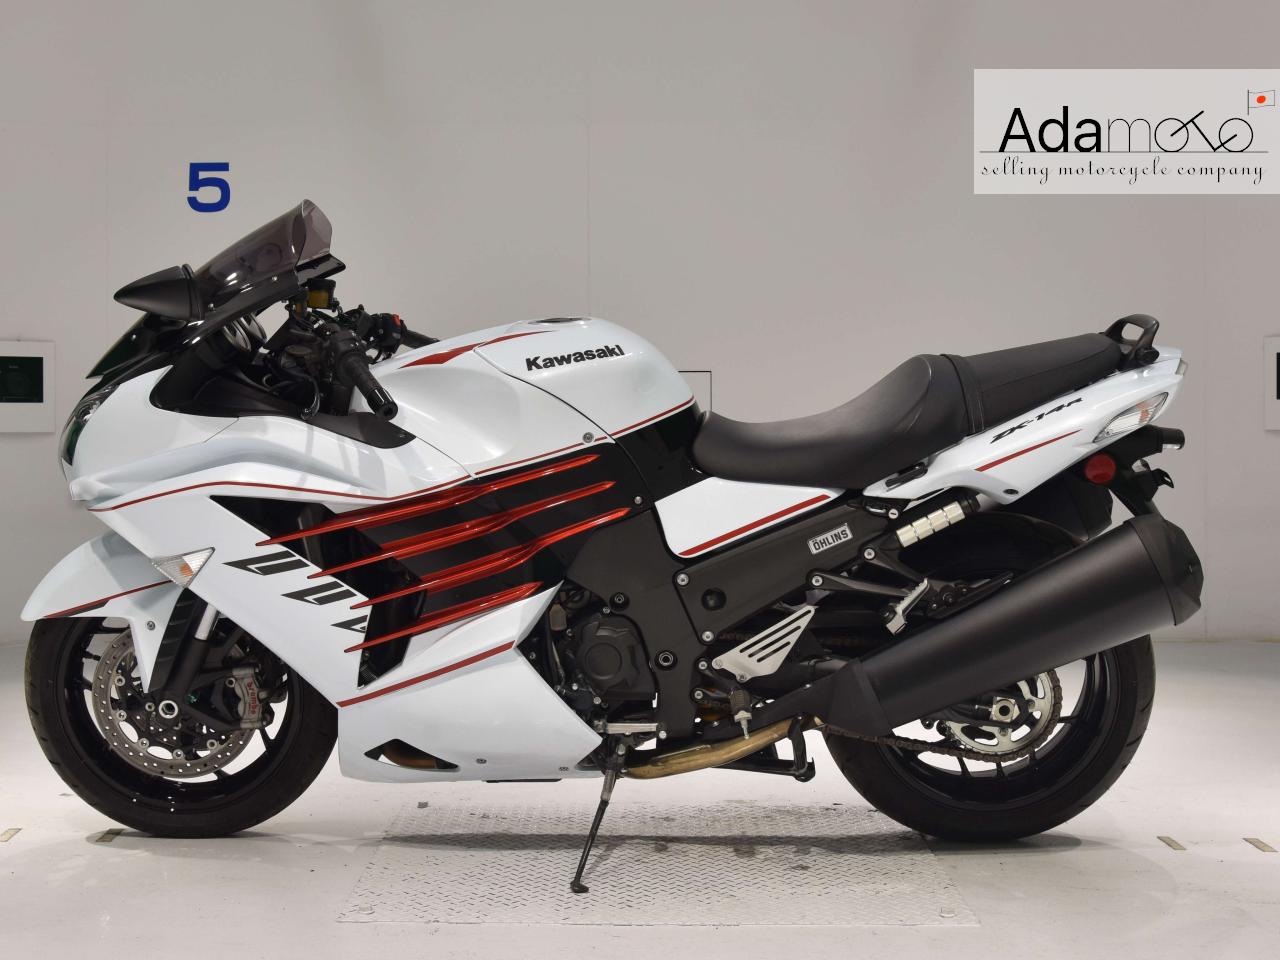 Kawasaki ZX 14RA - Adamoto - Motorcycles from Japan